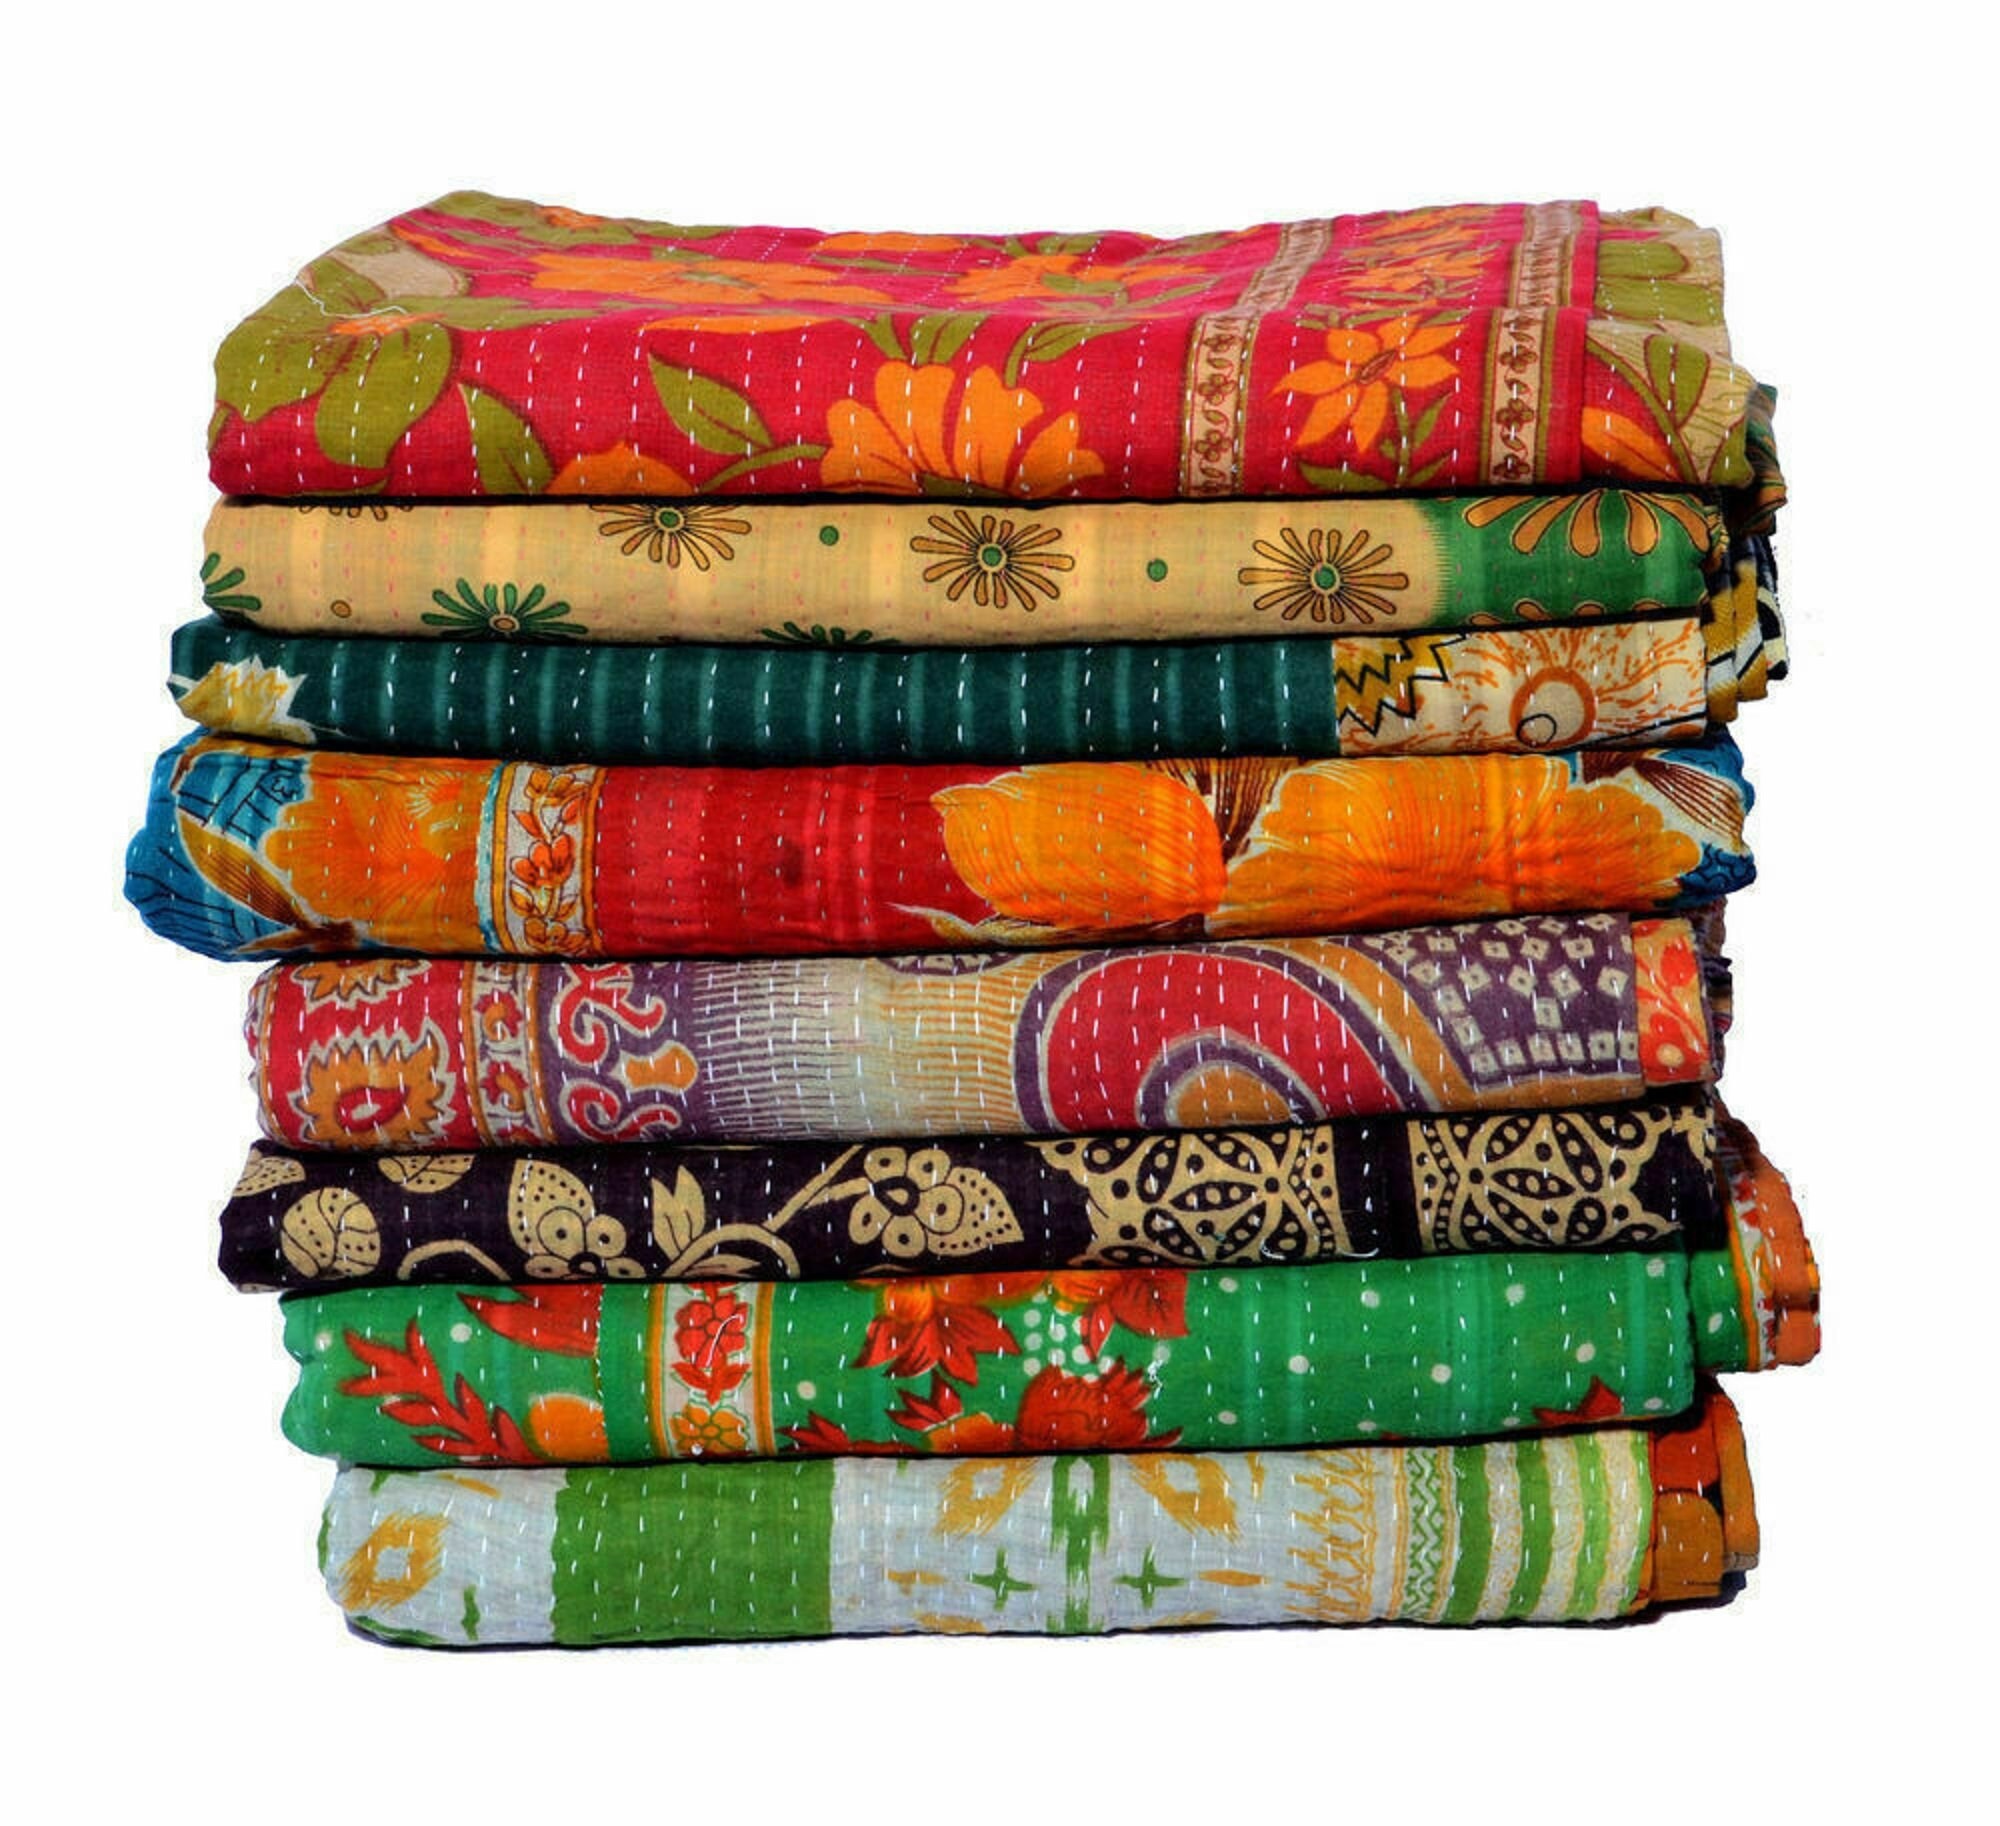 Индийский хлопок купить. Индийские хлопковые ткани. Индийское одеяло. Ткани из хлопка в Индии. Одеяло из Индии.